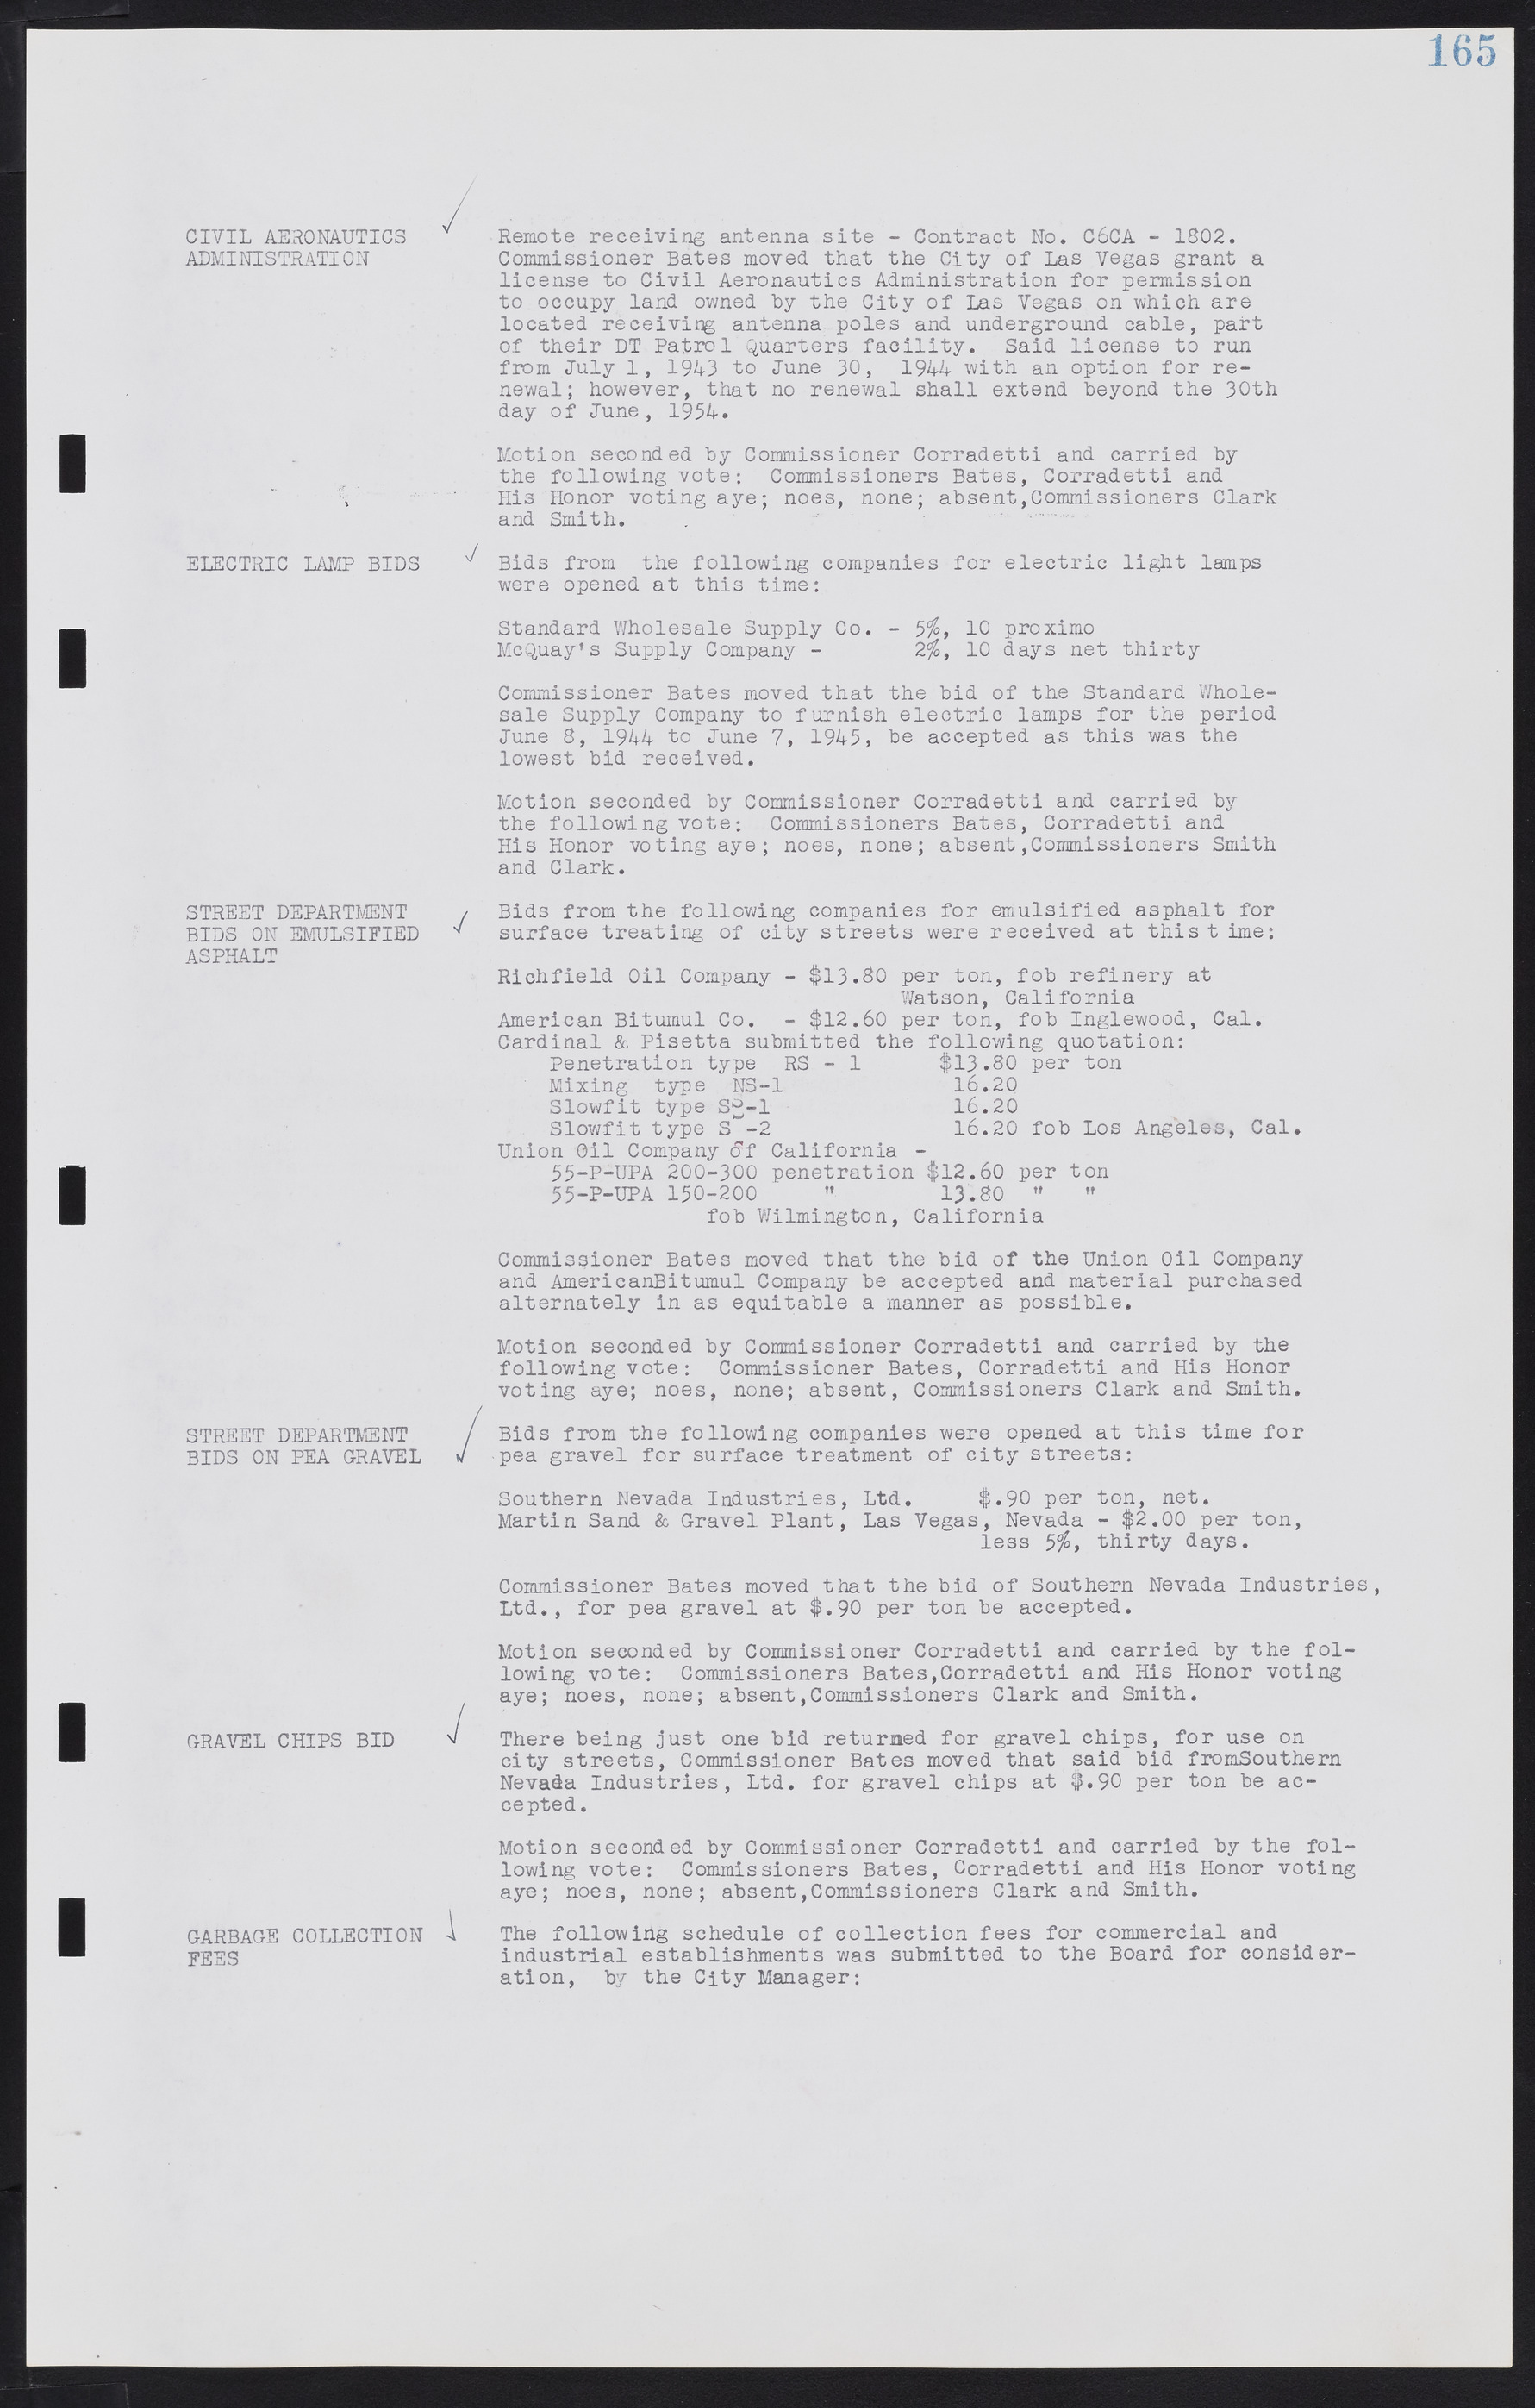 Las Vegas City Commission Minutes, August 11, 1942 to December 30, 1946, lvc000005-182